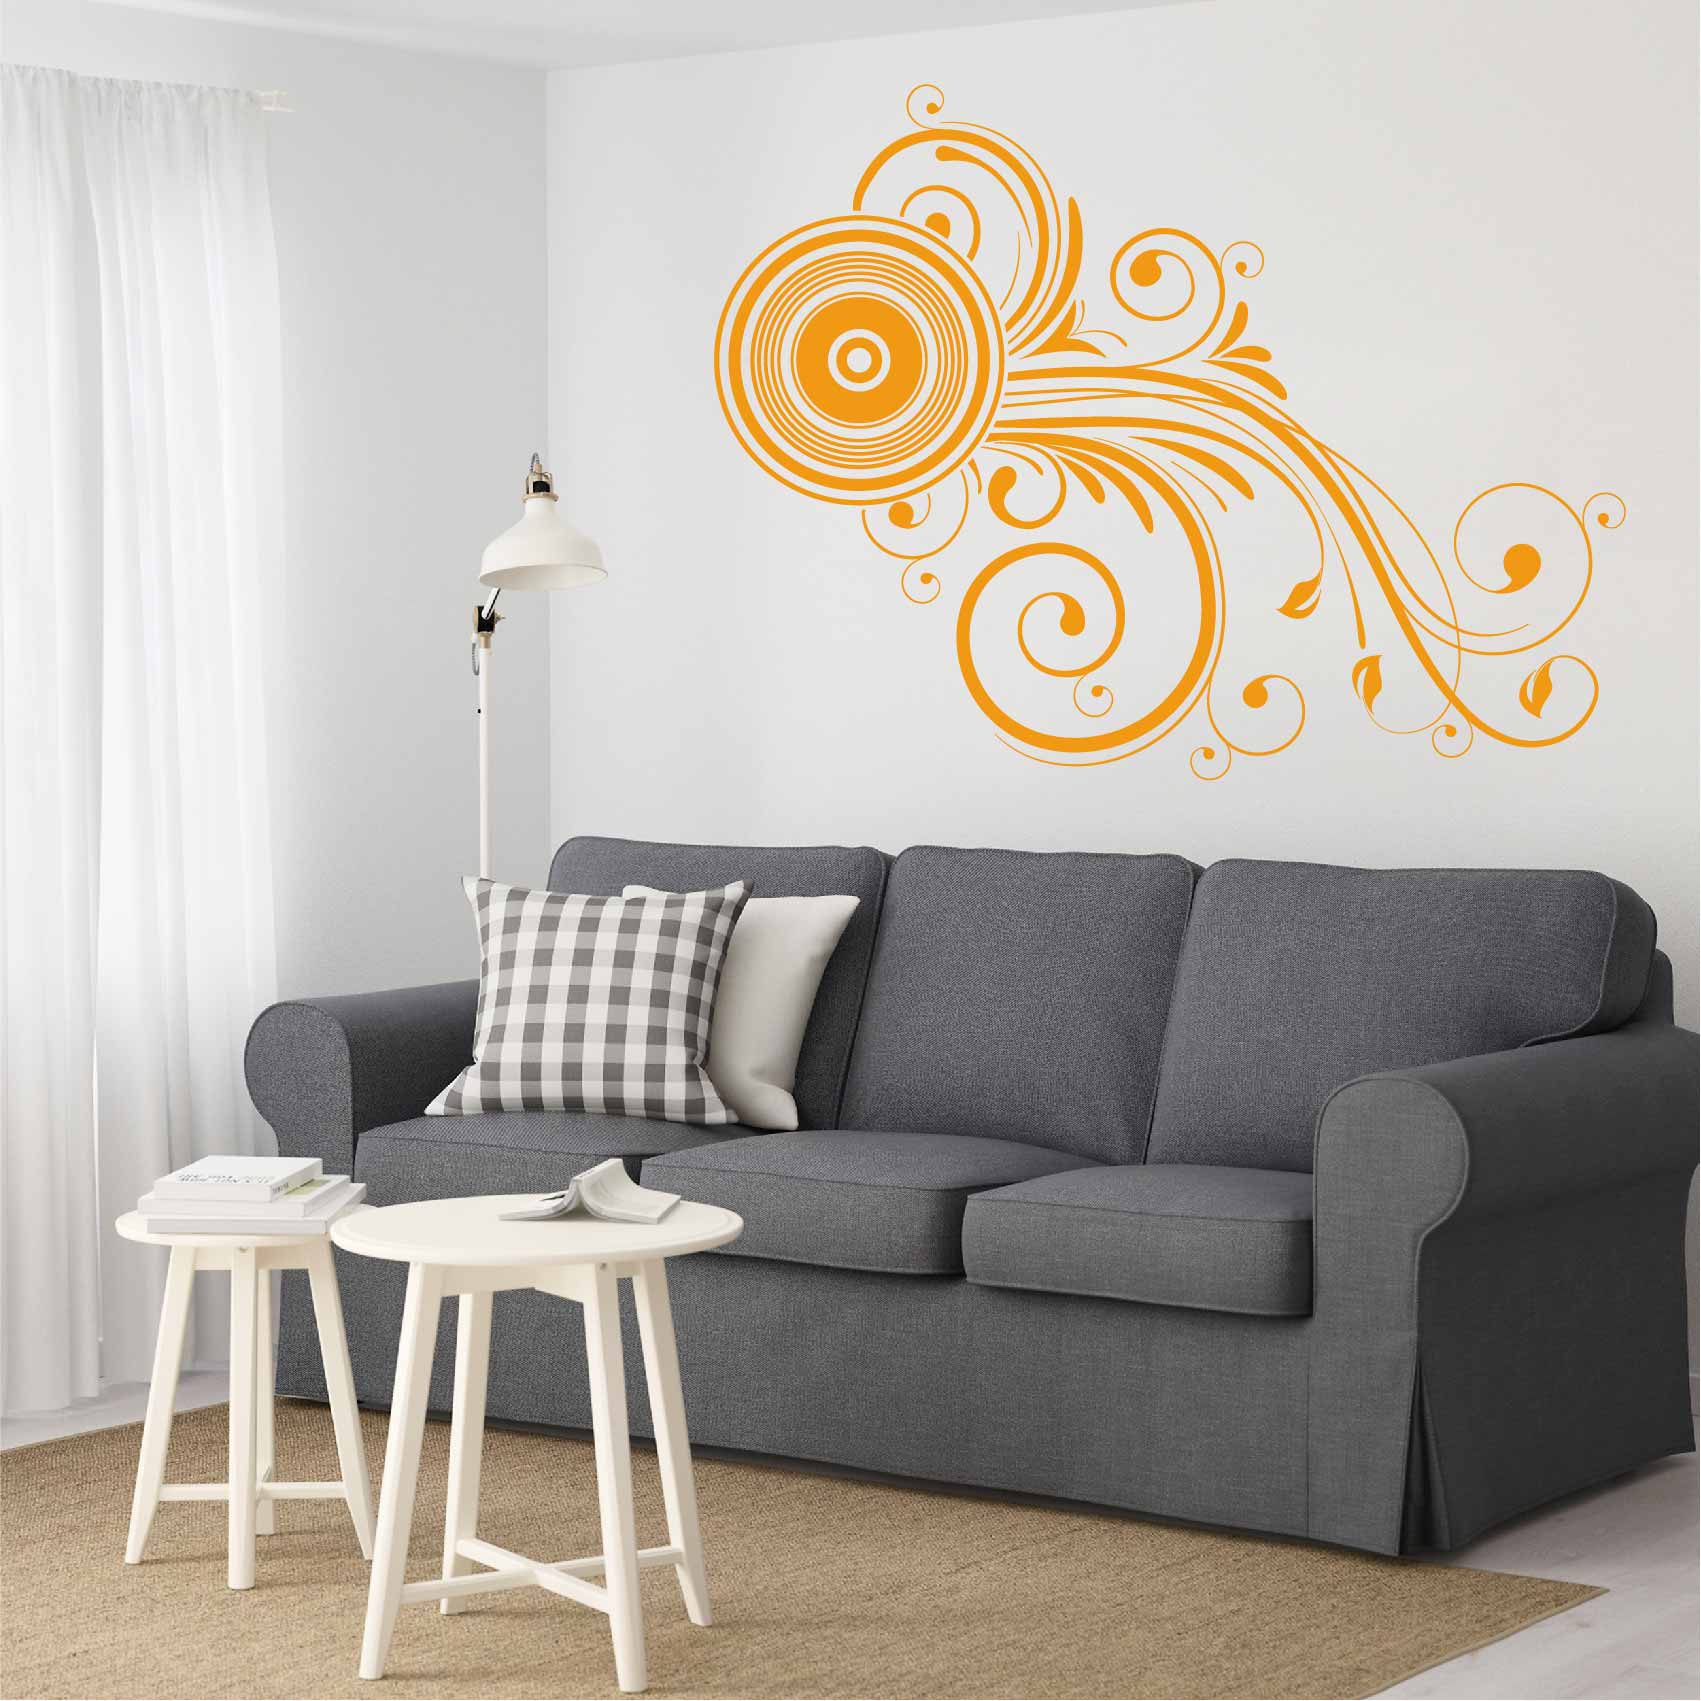 stickers-arabesque-rond-ref5arabesque-autocollant-muraux-arabesques-salon-sticker-mural-deco-design-forme-chambre-séjour